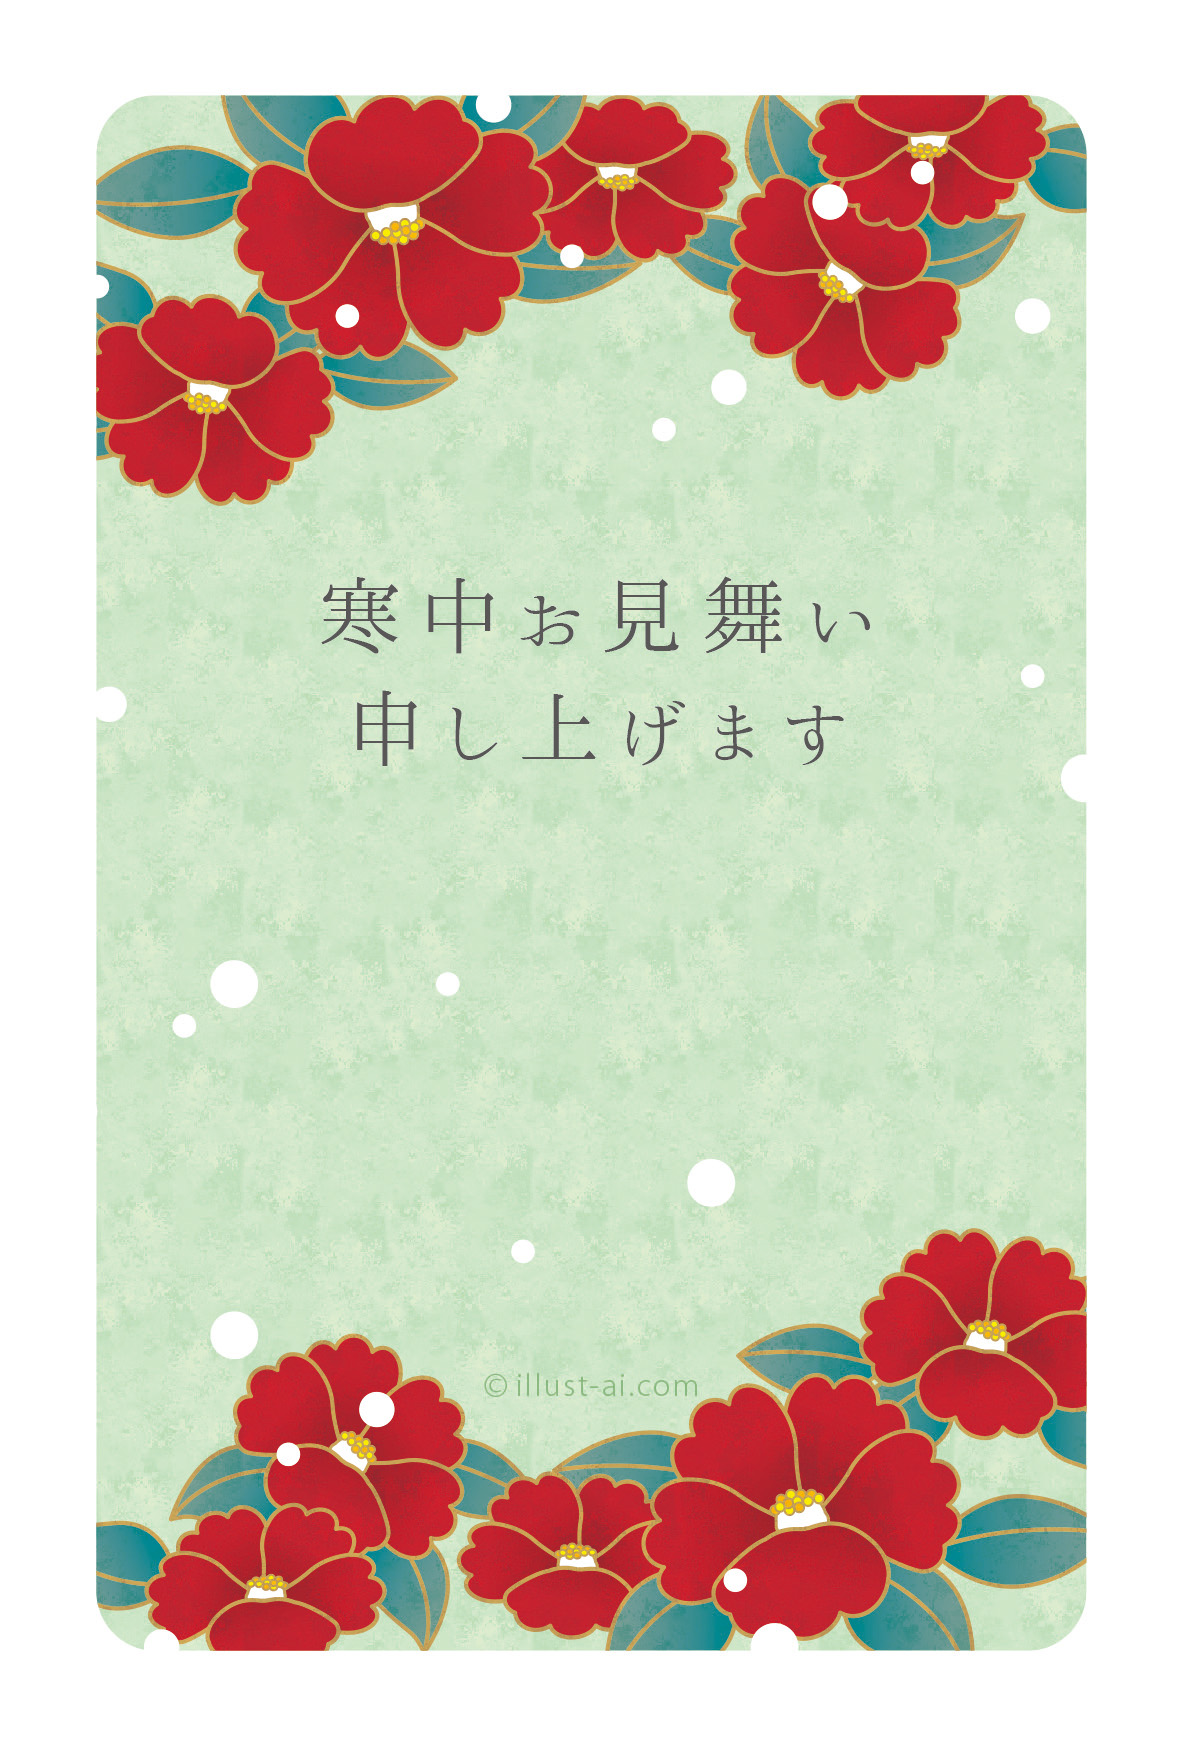 舞う雪と椿の花 寒中お見舞い19 ポストカード イラスト素材サイト イラストareira Postcard Template